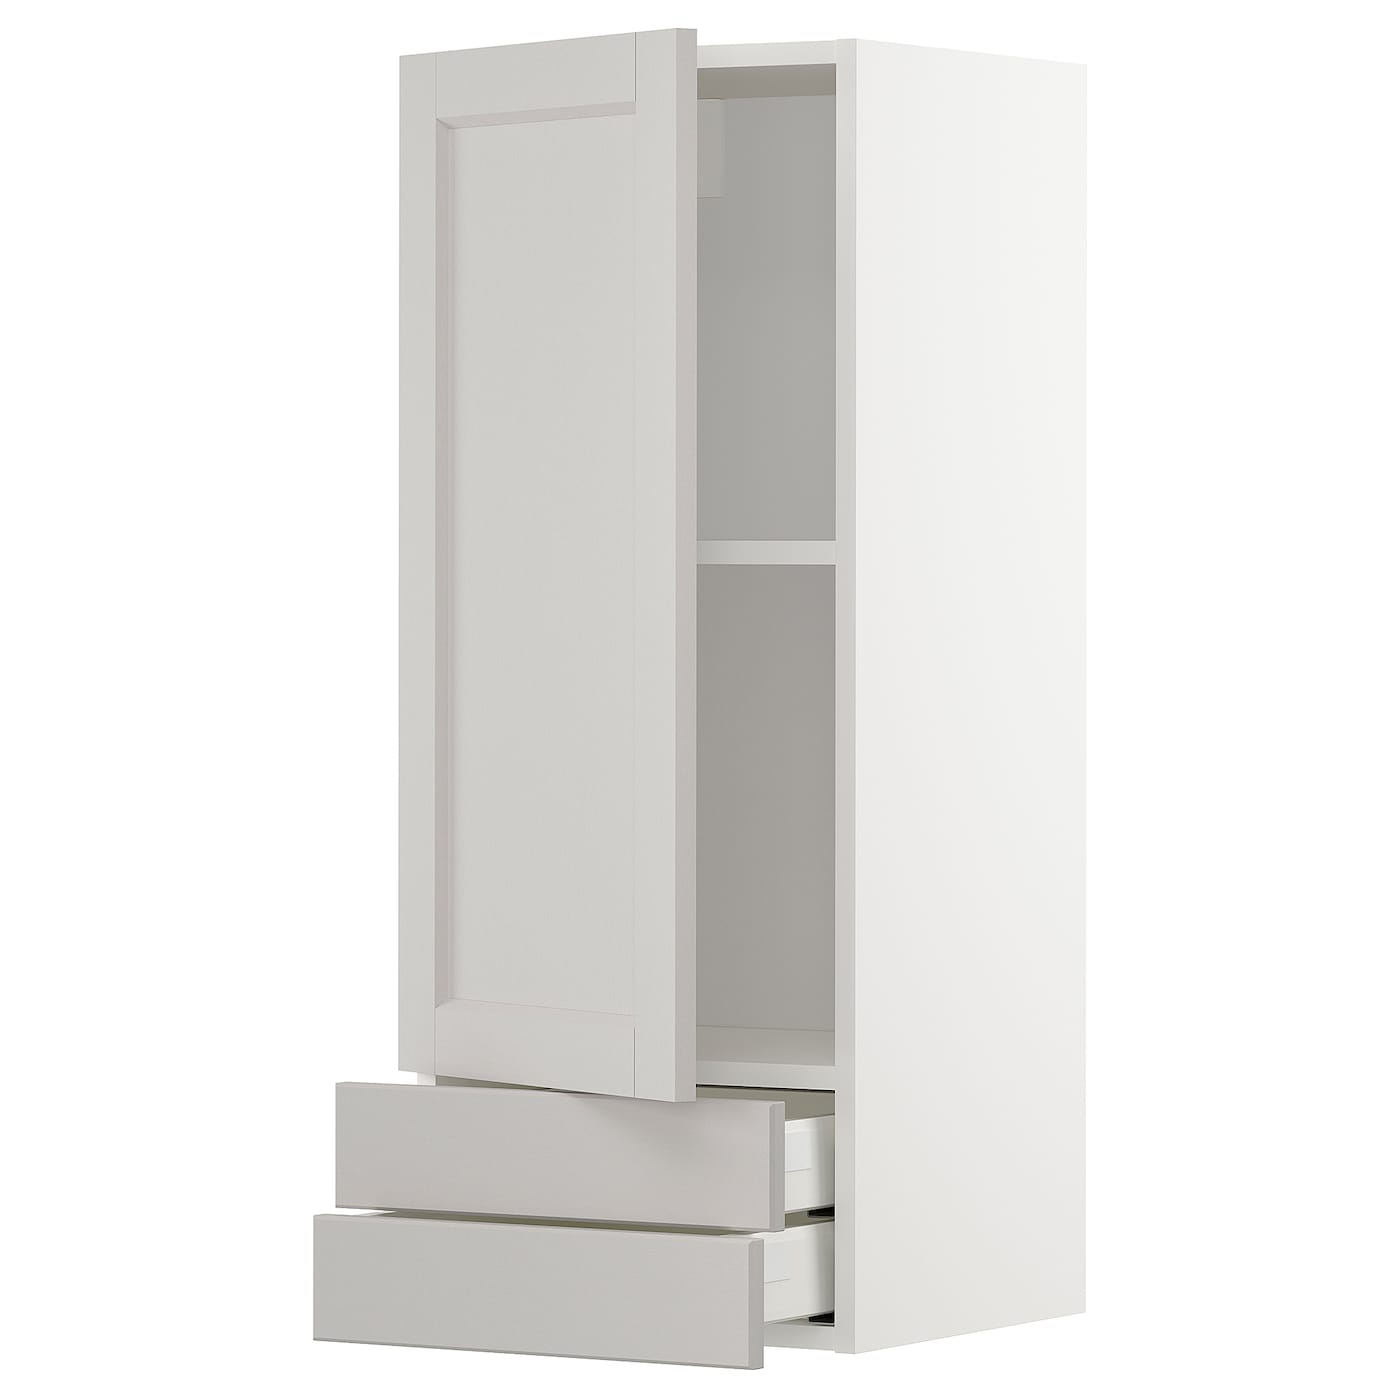 Навесной шкаф с полкой - METOD/MAXIMERA  IKEA/ МЕТОД /МАКСИМЕРА ИКЕА, 100х40 см, белый/серый